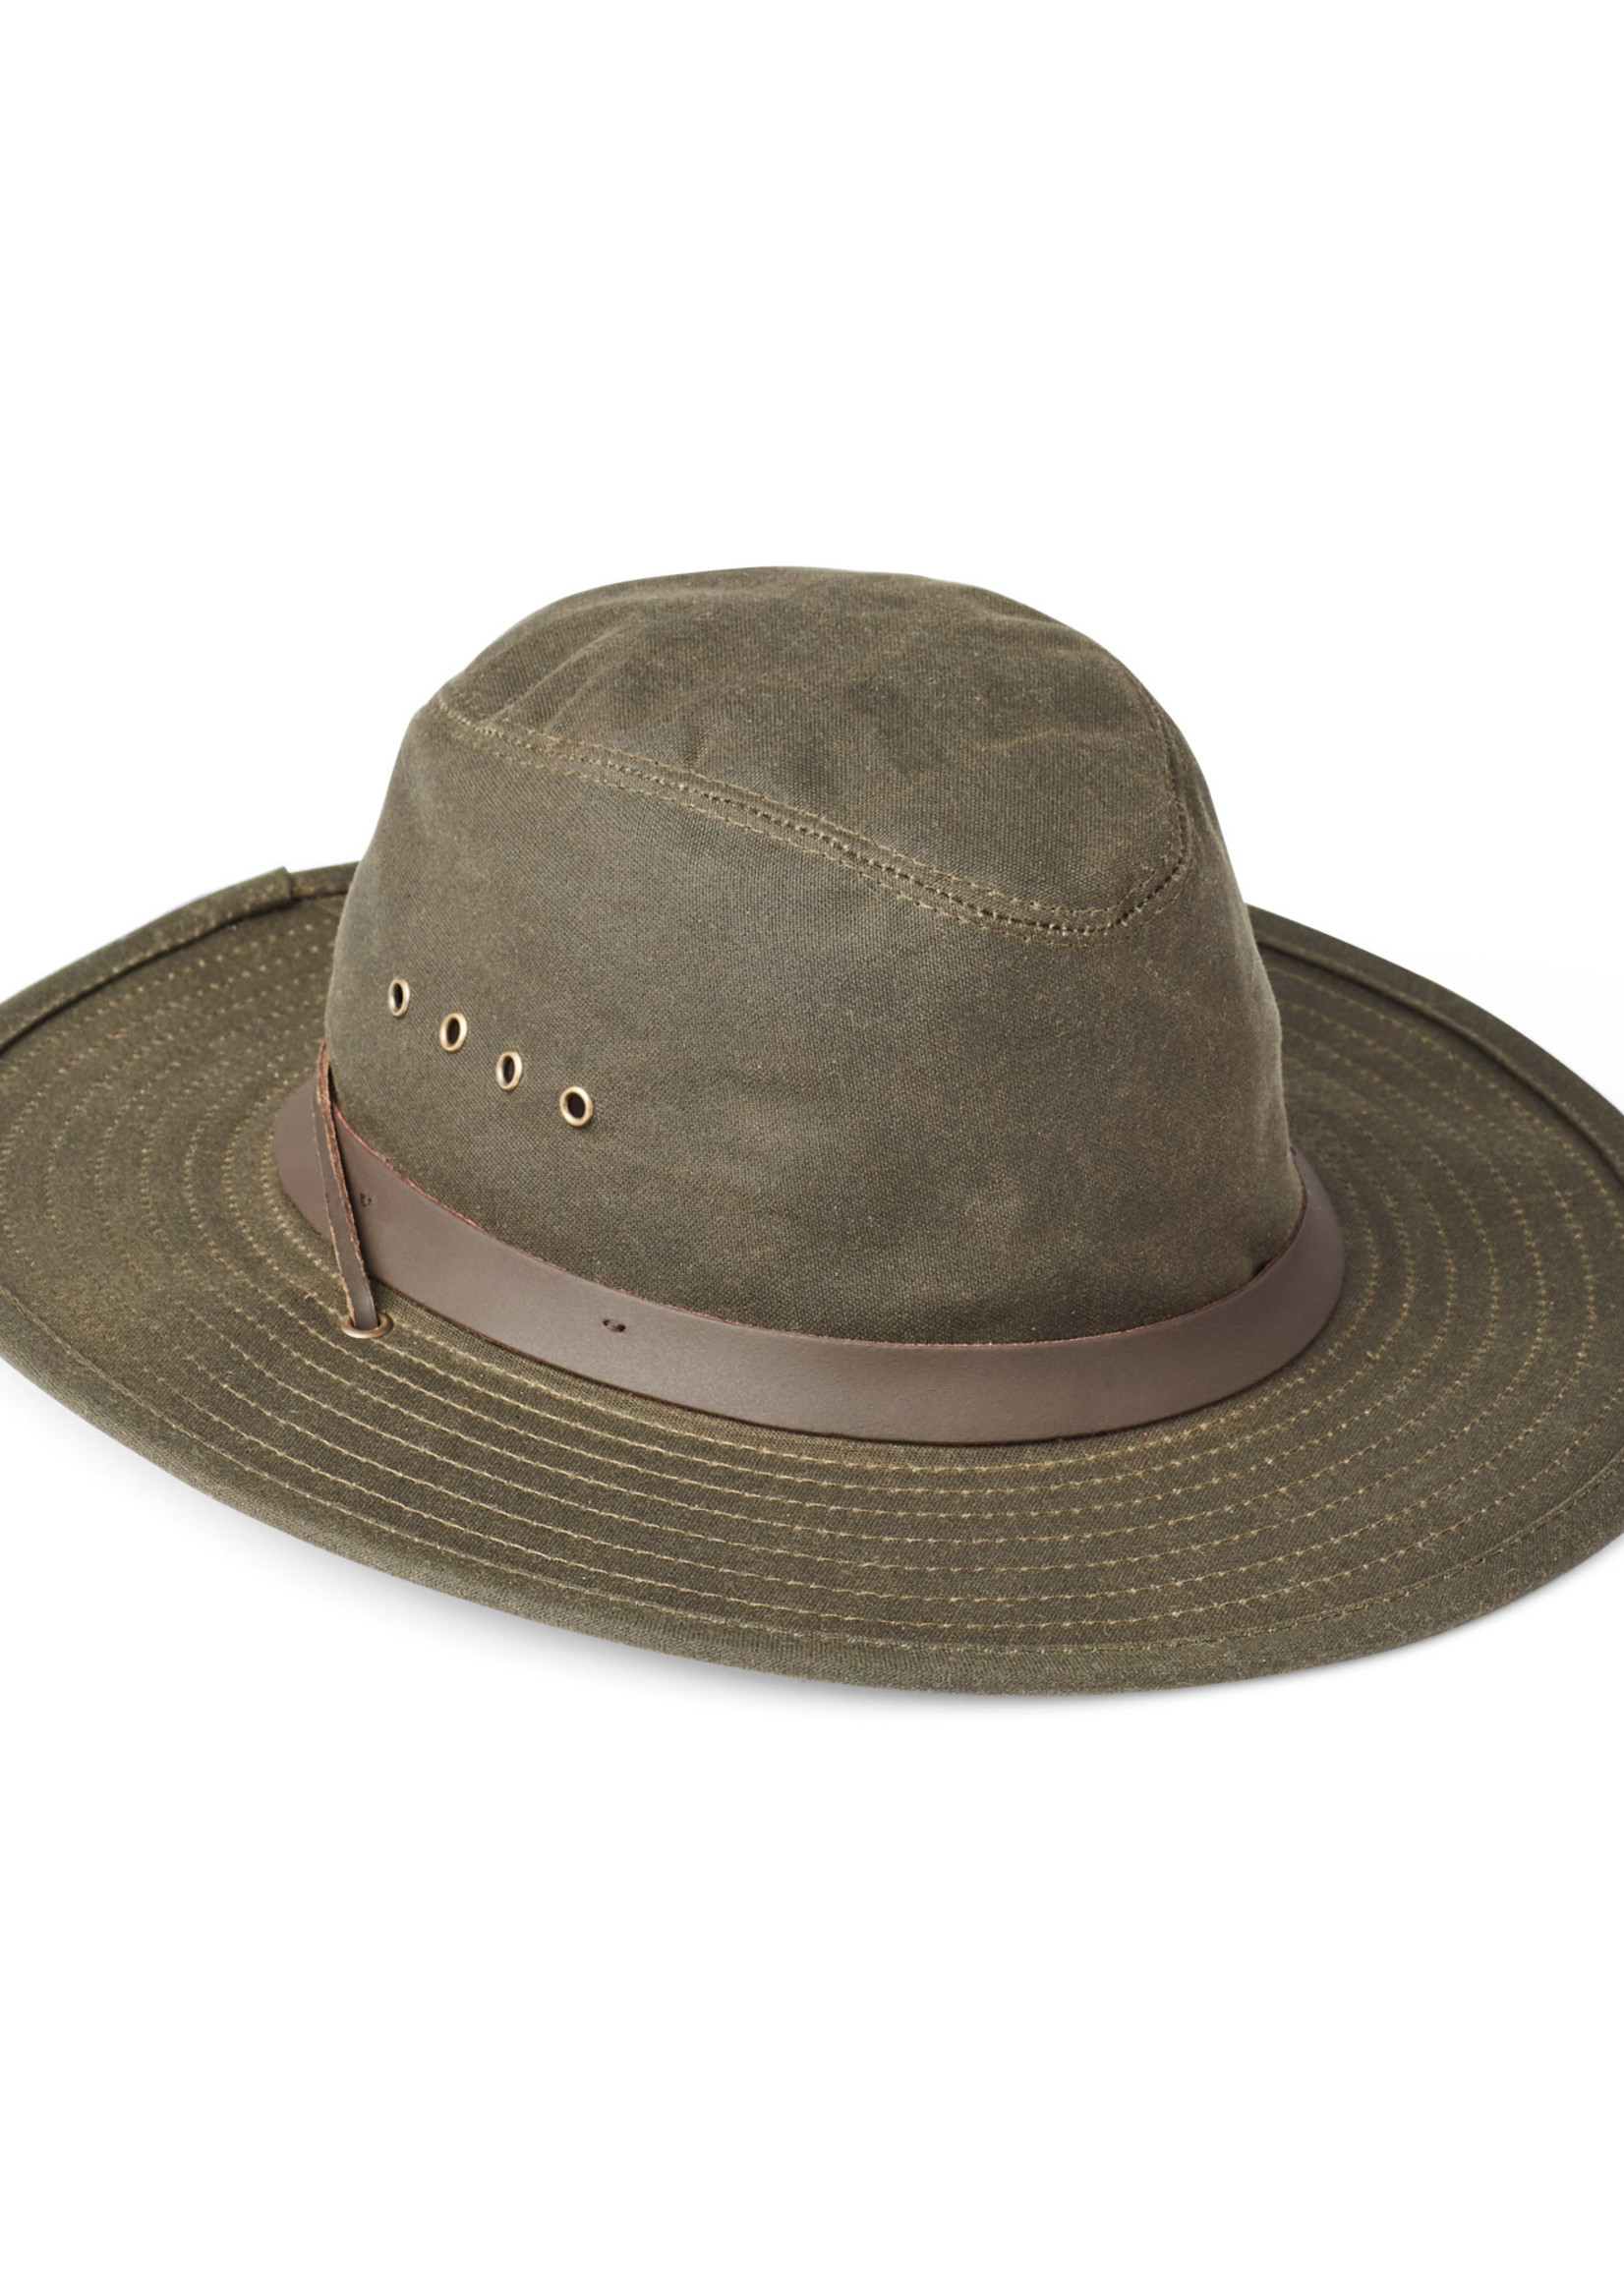 Filson Tin Bush Hat: OtterGreen